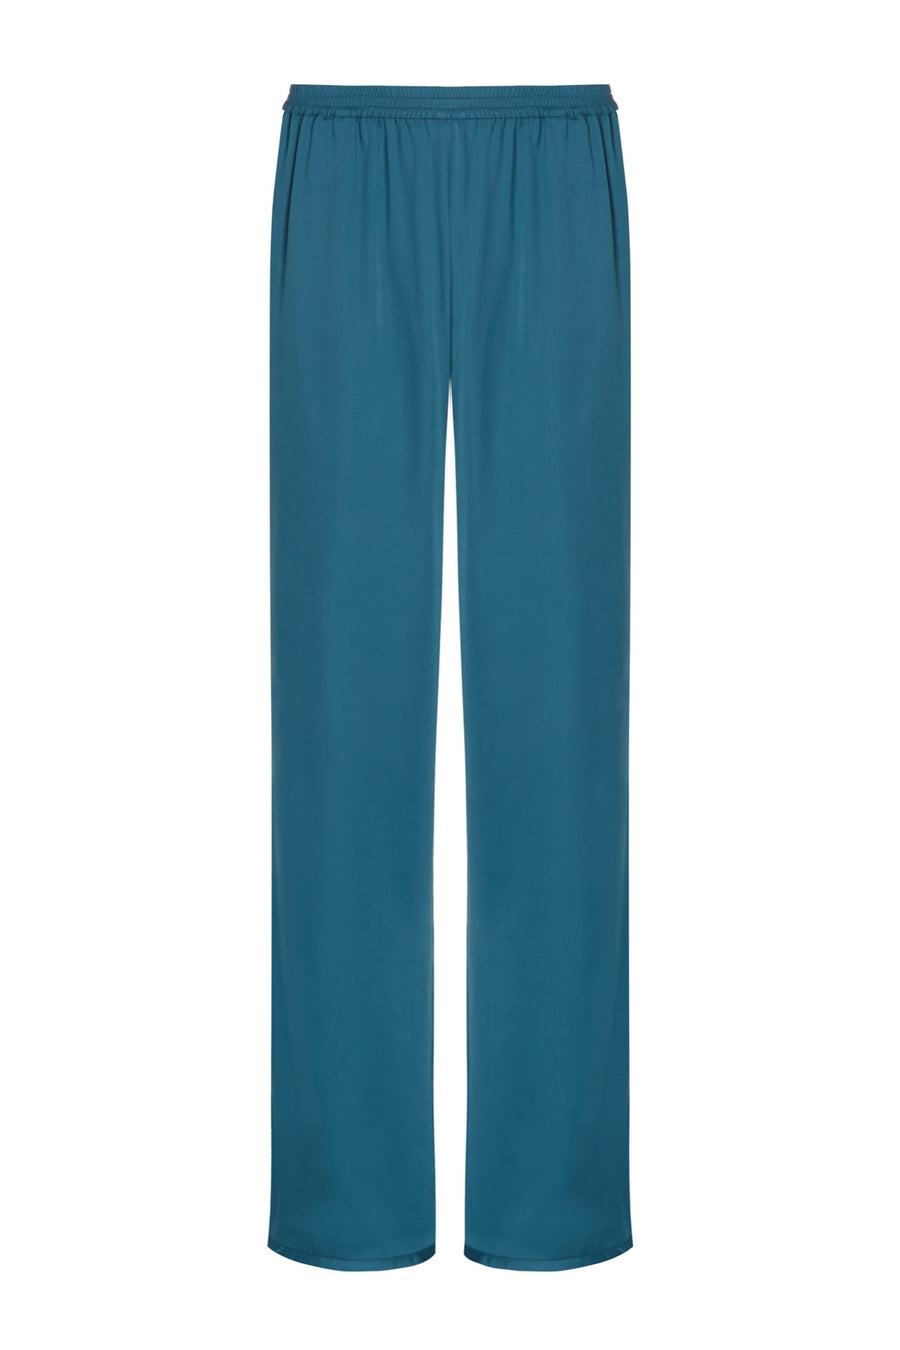 Blue pyjama bottoms in vegan silk